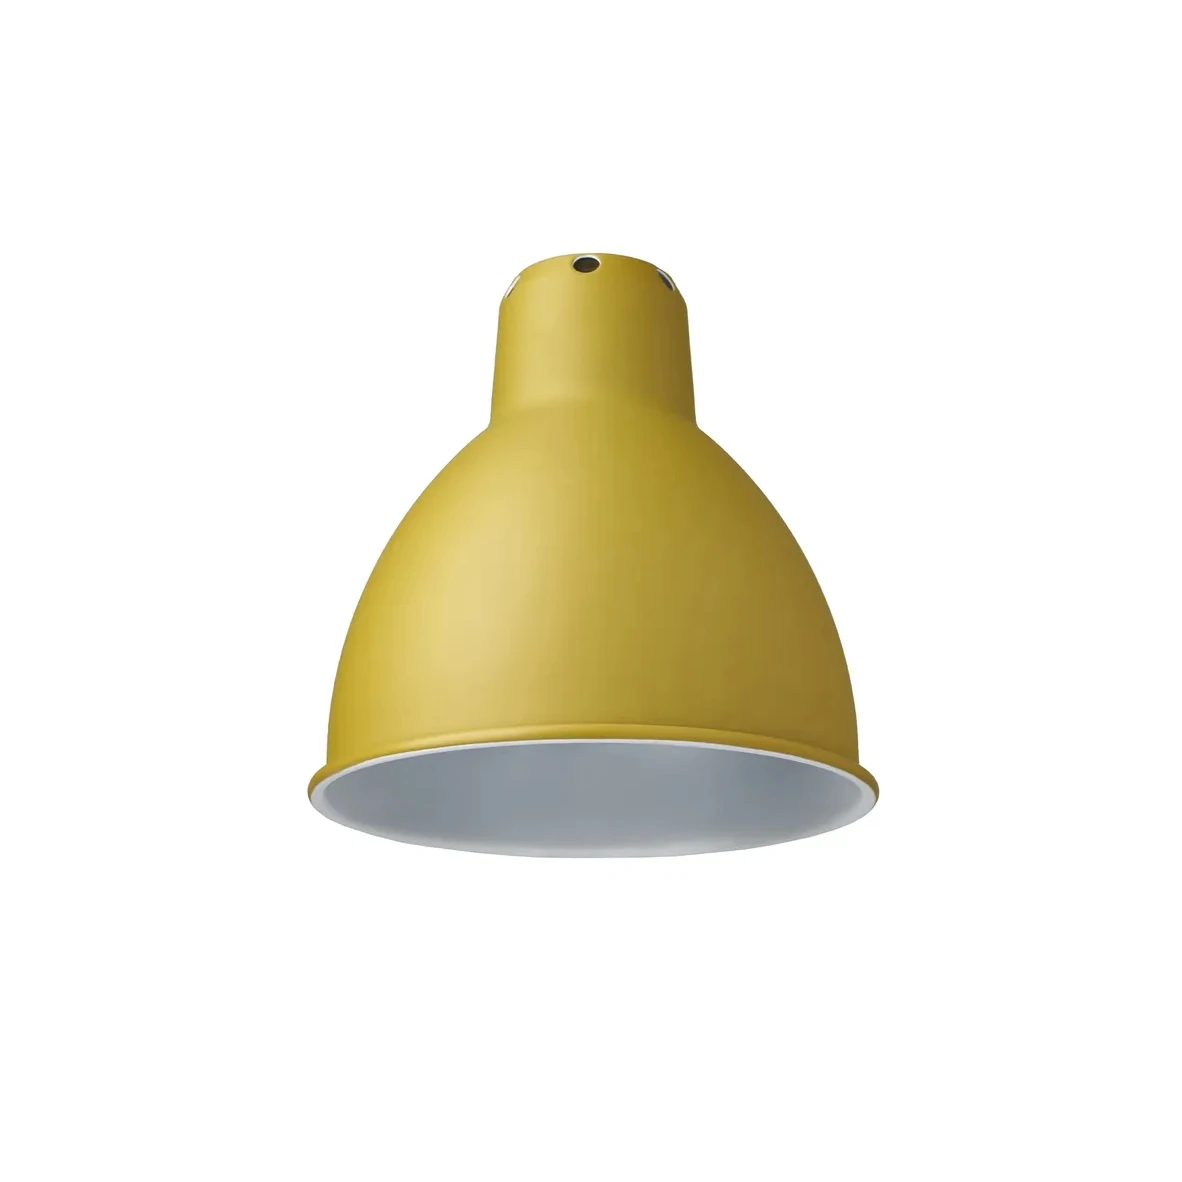 lampe skjerm - Søk - IKEA  Pendant lamp shade, Lamp shade